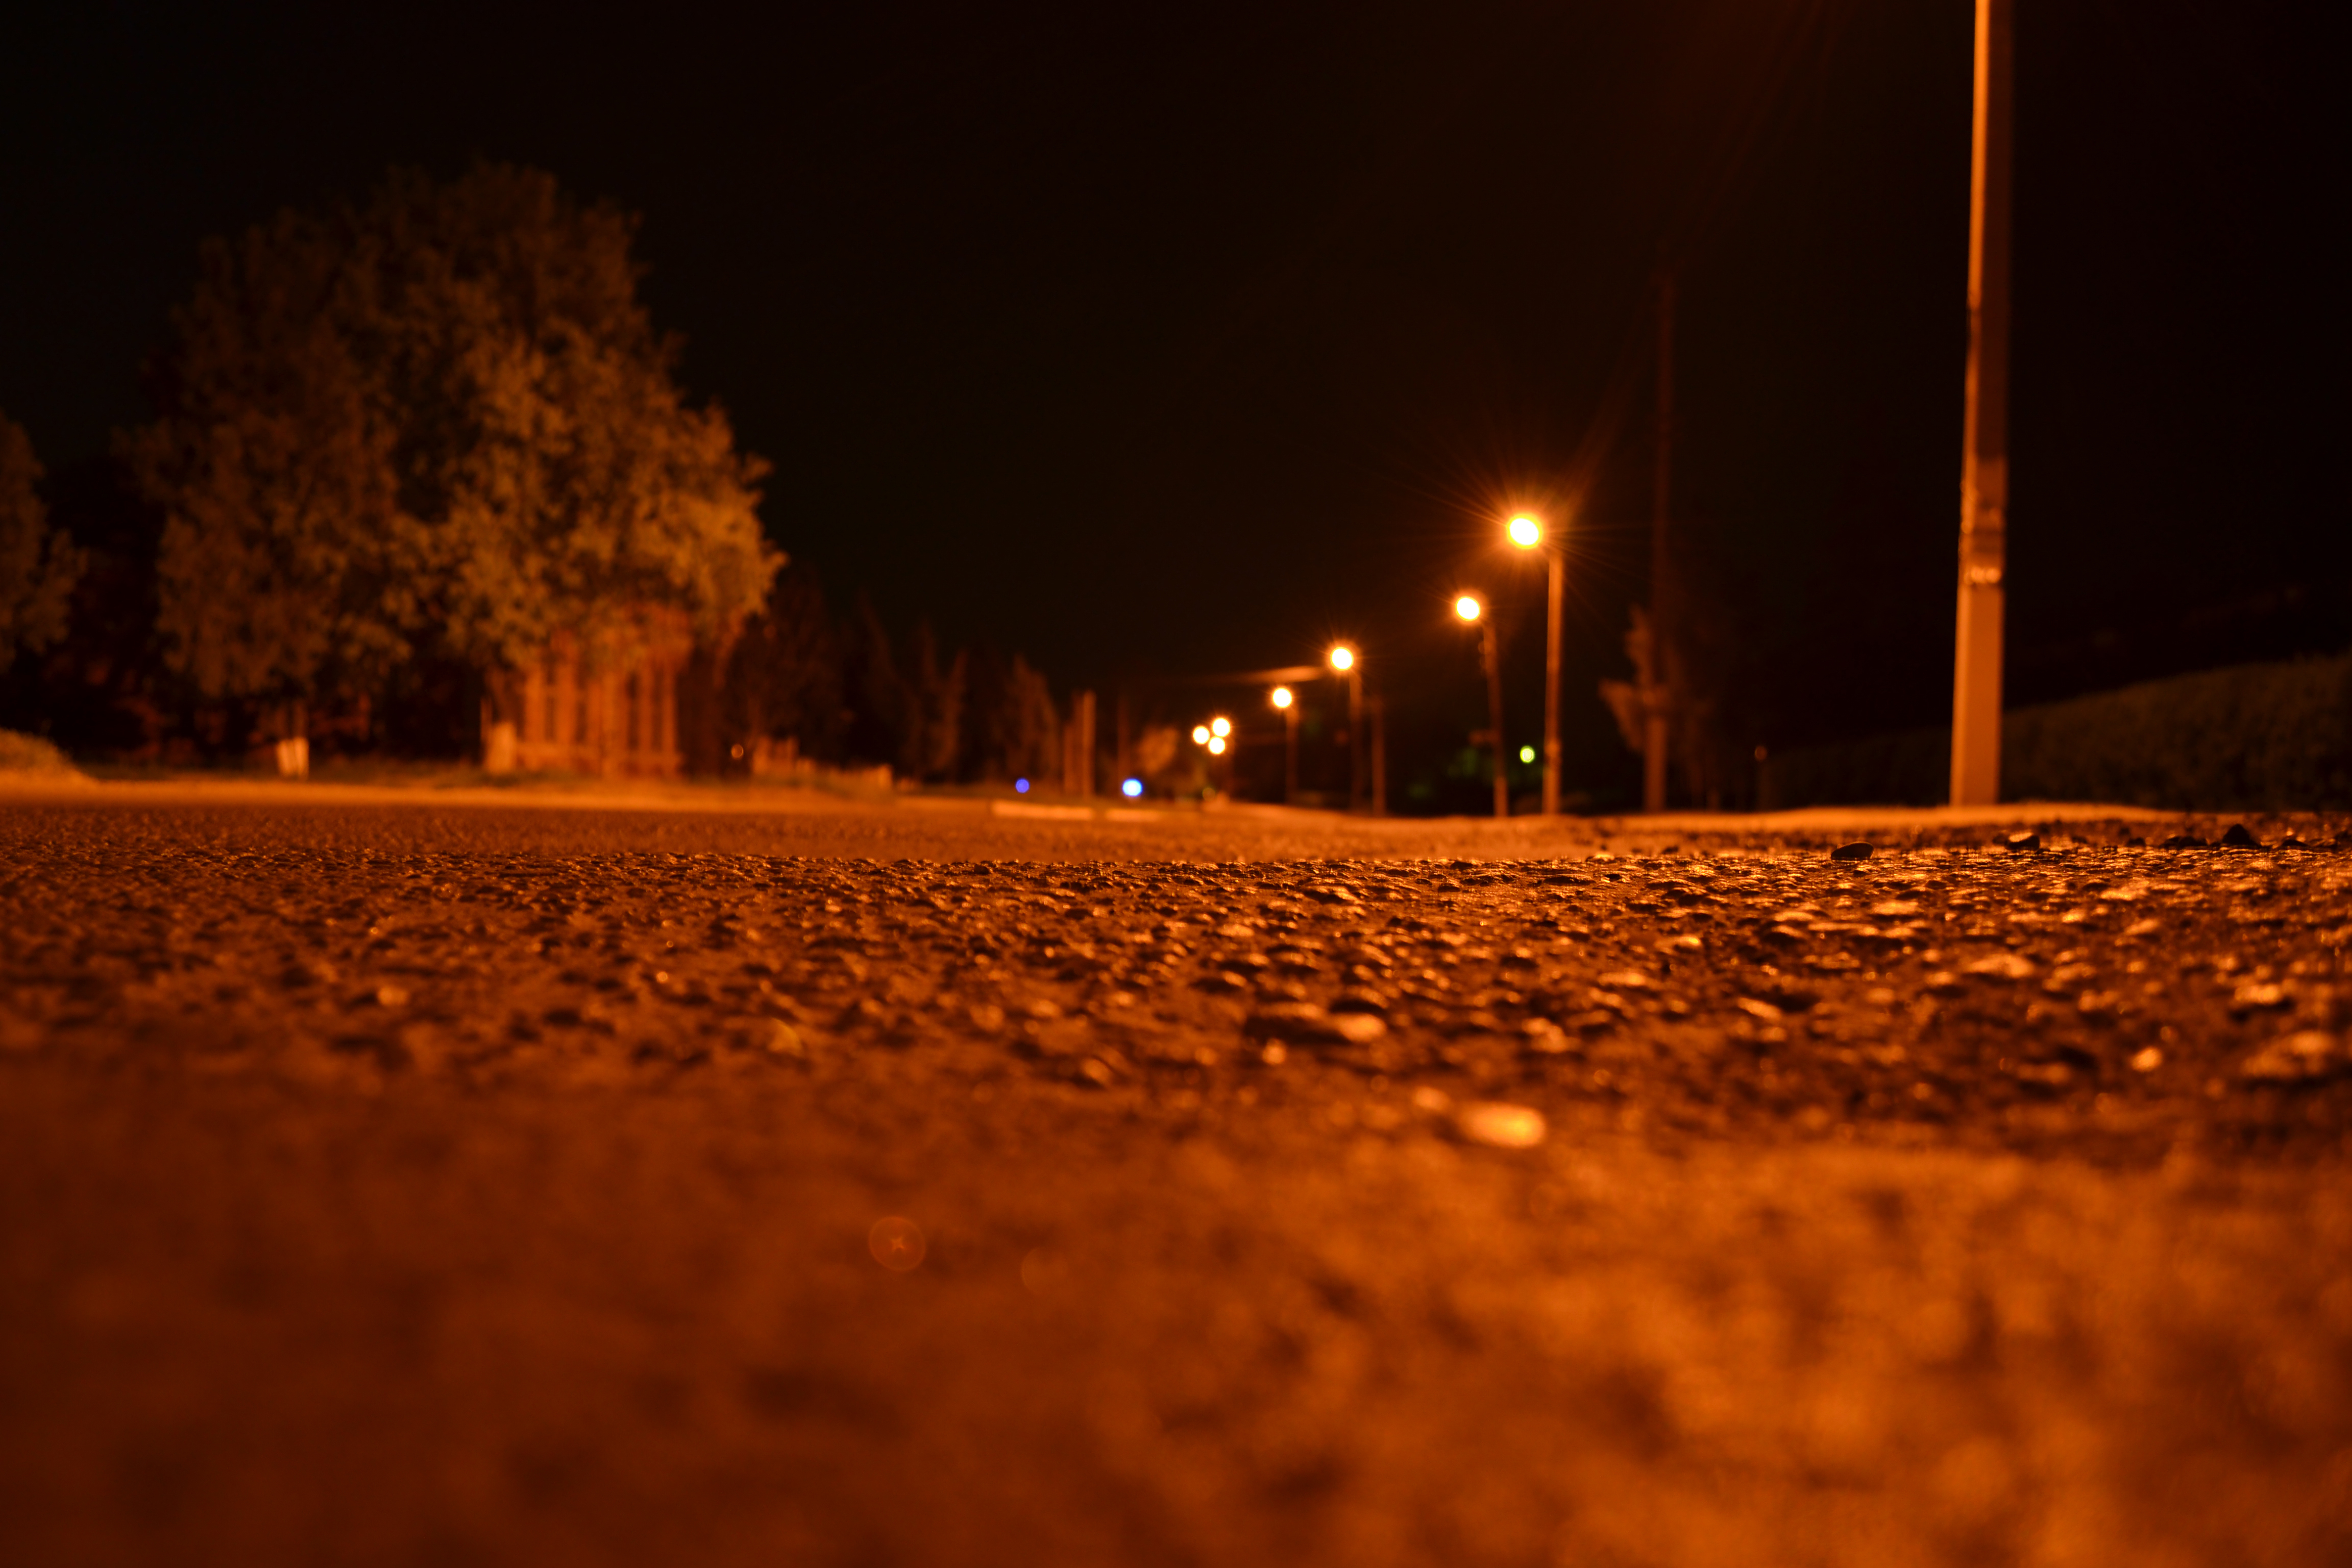 9 вечера на улице. Пустынная улица ночью. Ночь улица фонарь. Темная улица с фонарями. Желтые фонари и дорога.